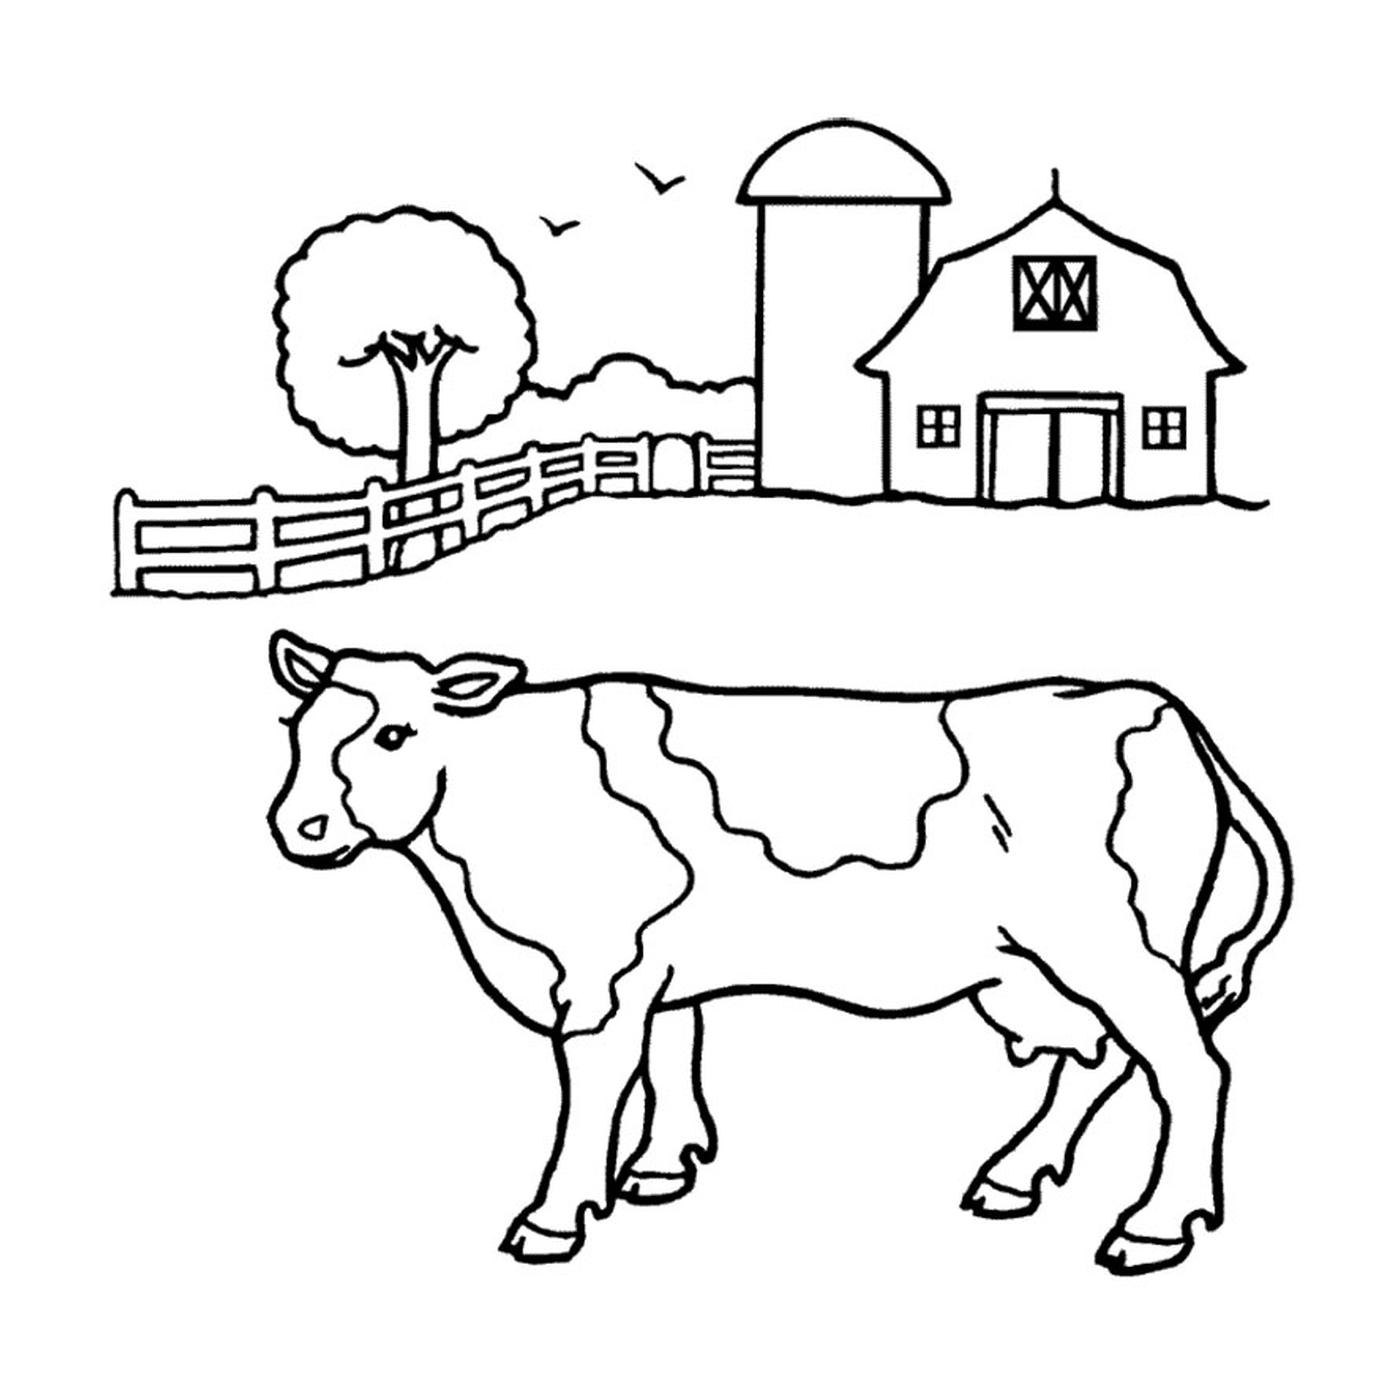  一头奶牛站在谷仓前面 